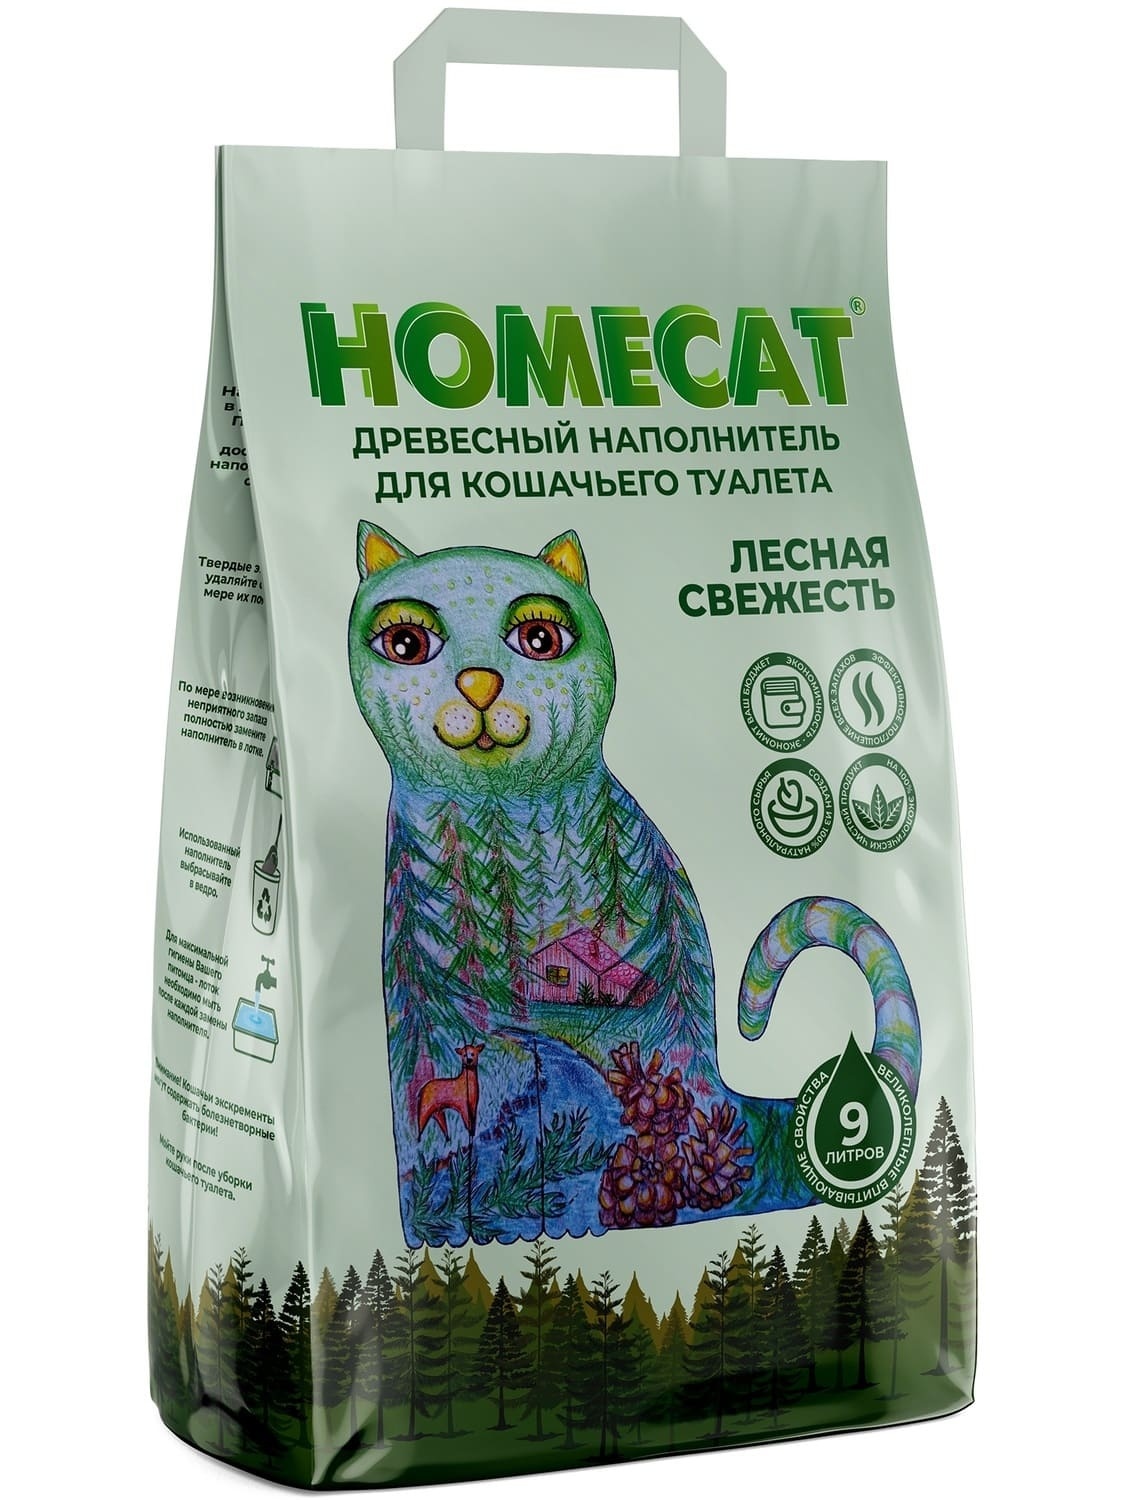 Homecat наполнитель Homecat наполнитель древесный наполнитель, мелкие гранулы (5,3 кг) фото